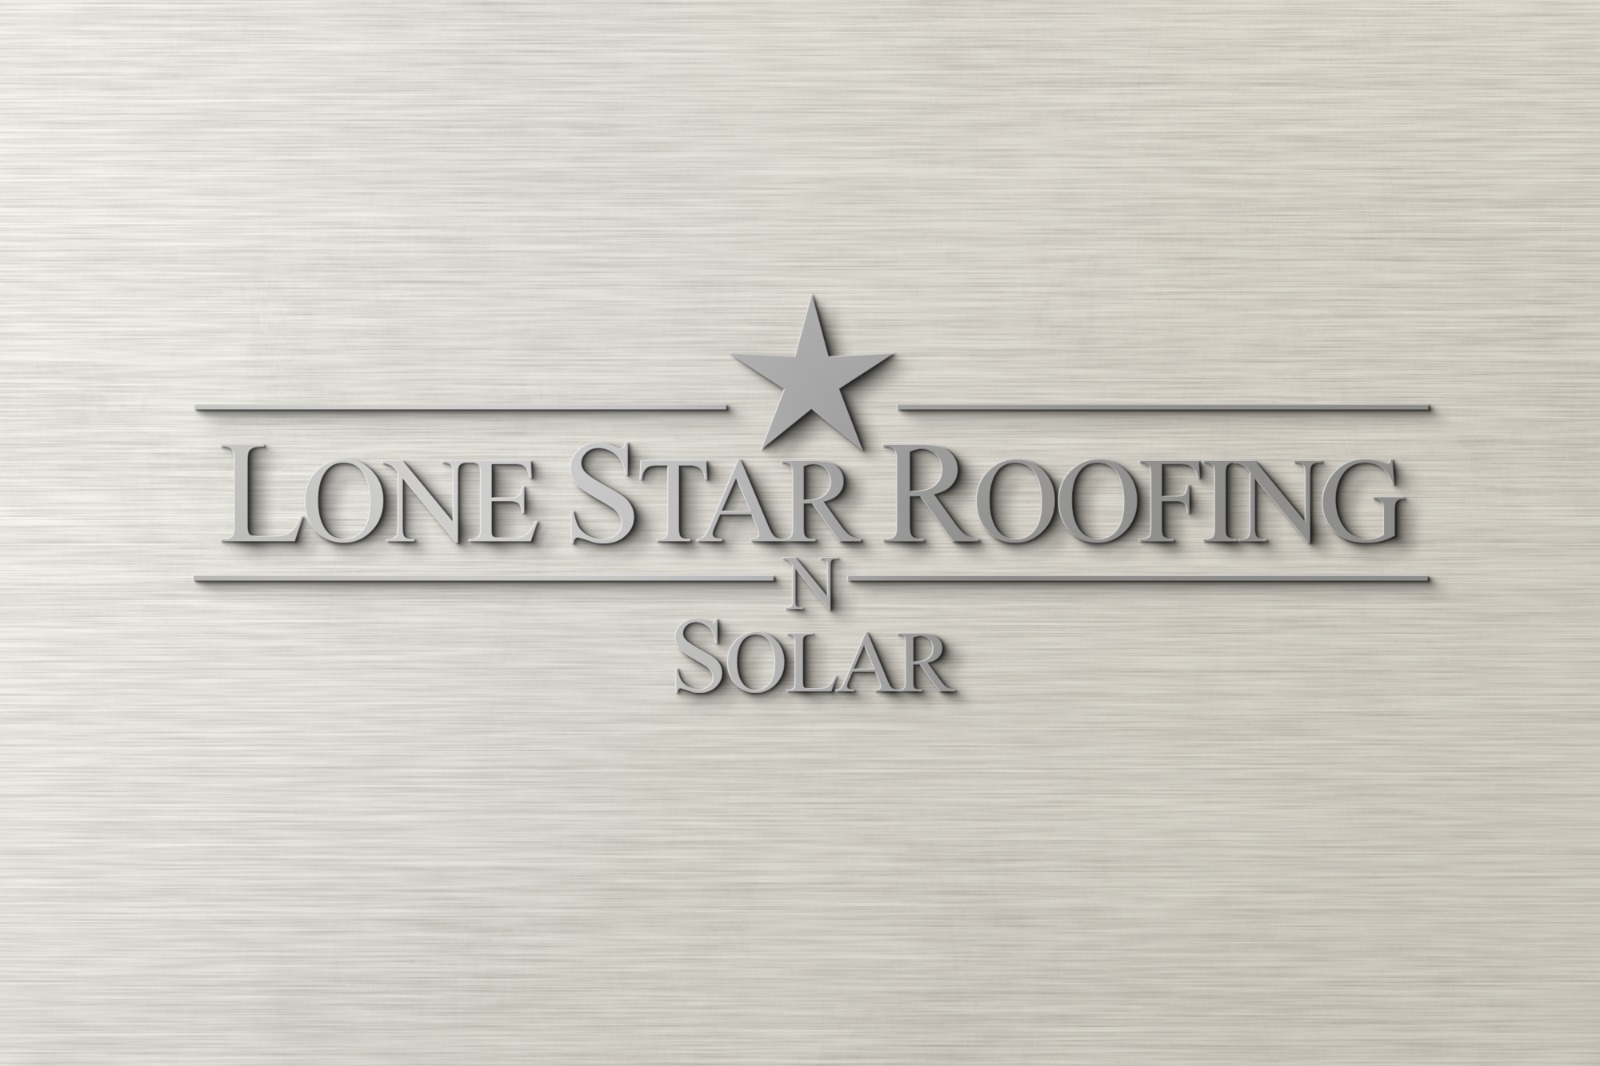 Lone Star Roofing N Solar Logo